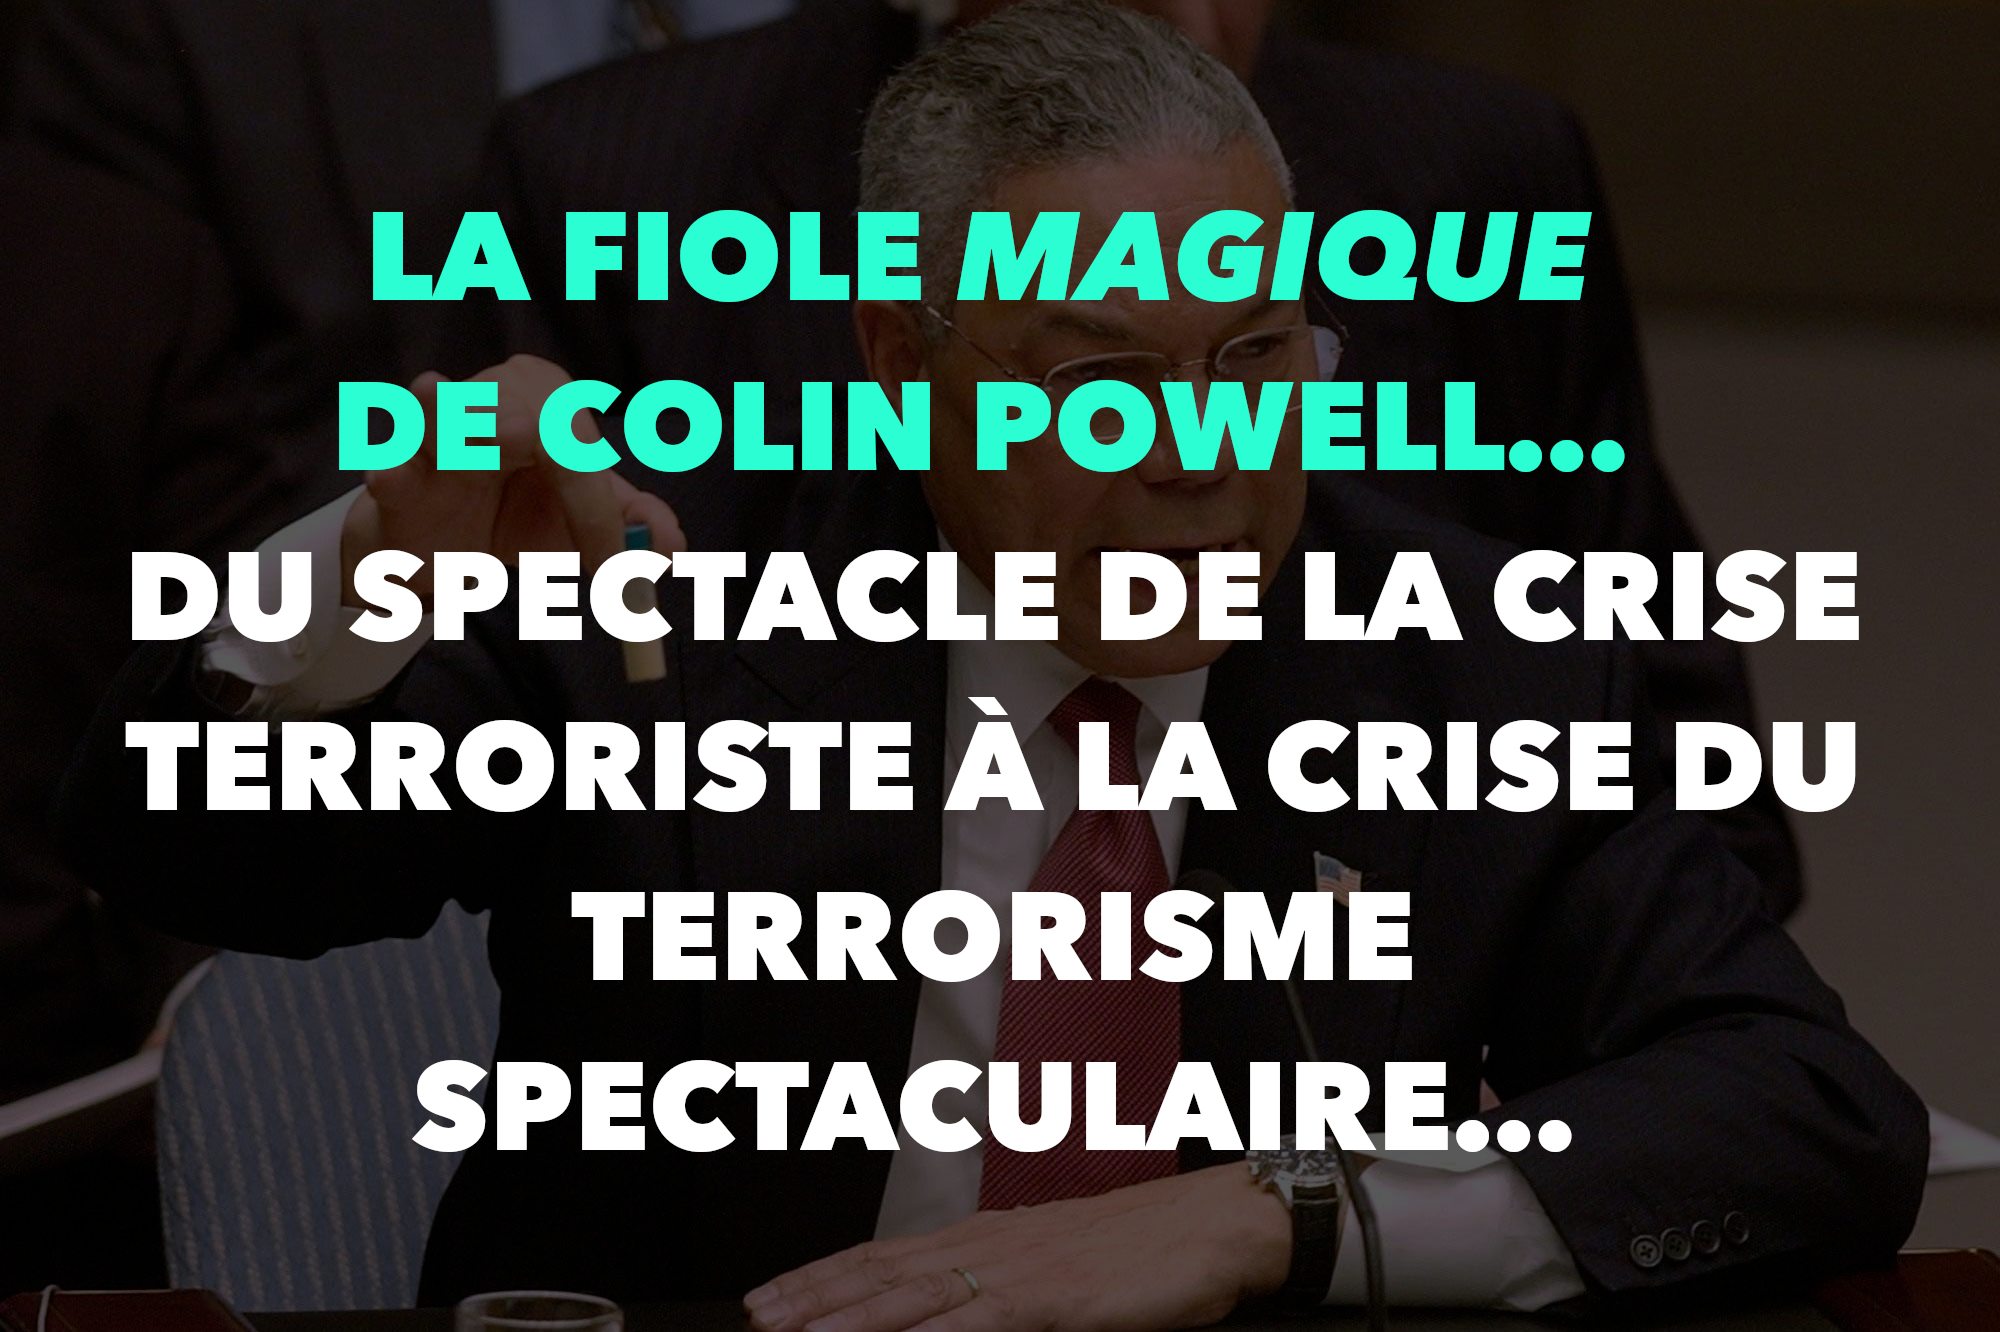 La fiole magique de Colin Powell… Du spectacle de la crise terroriste à la crise du terrorisme spectaculaire…